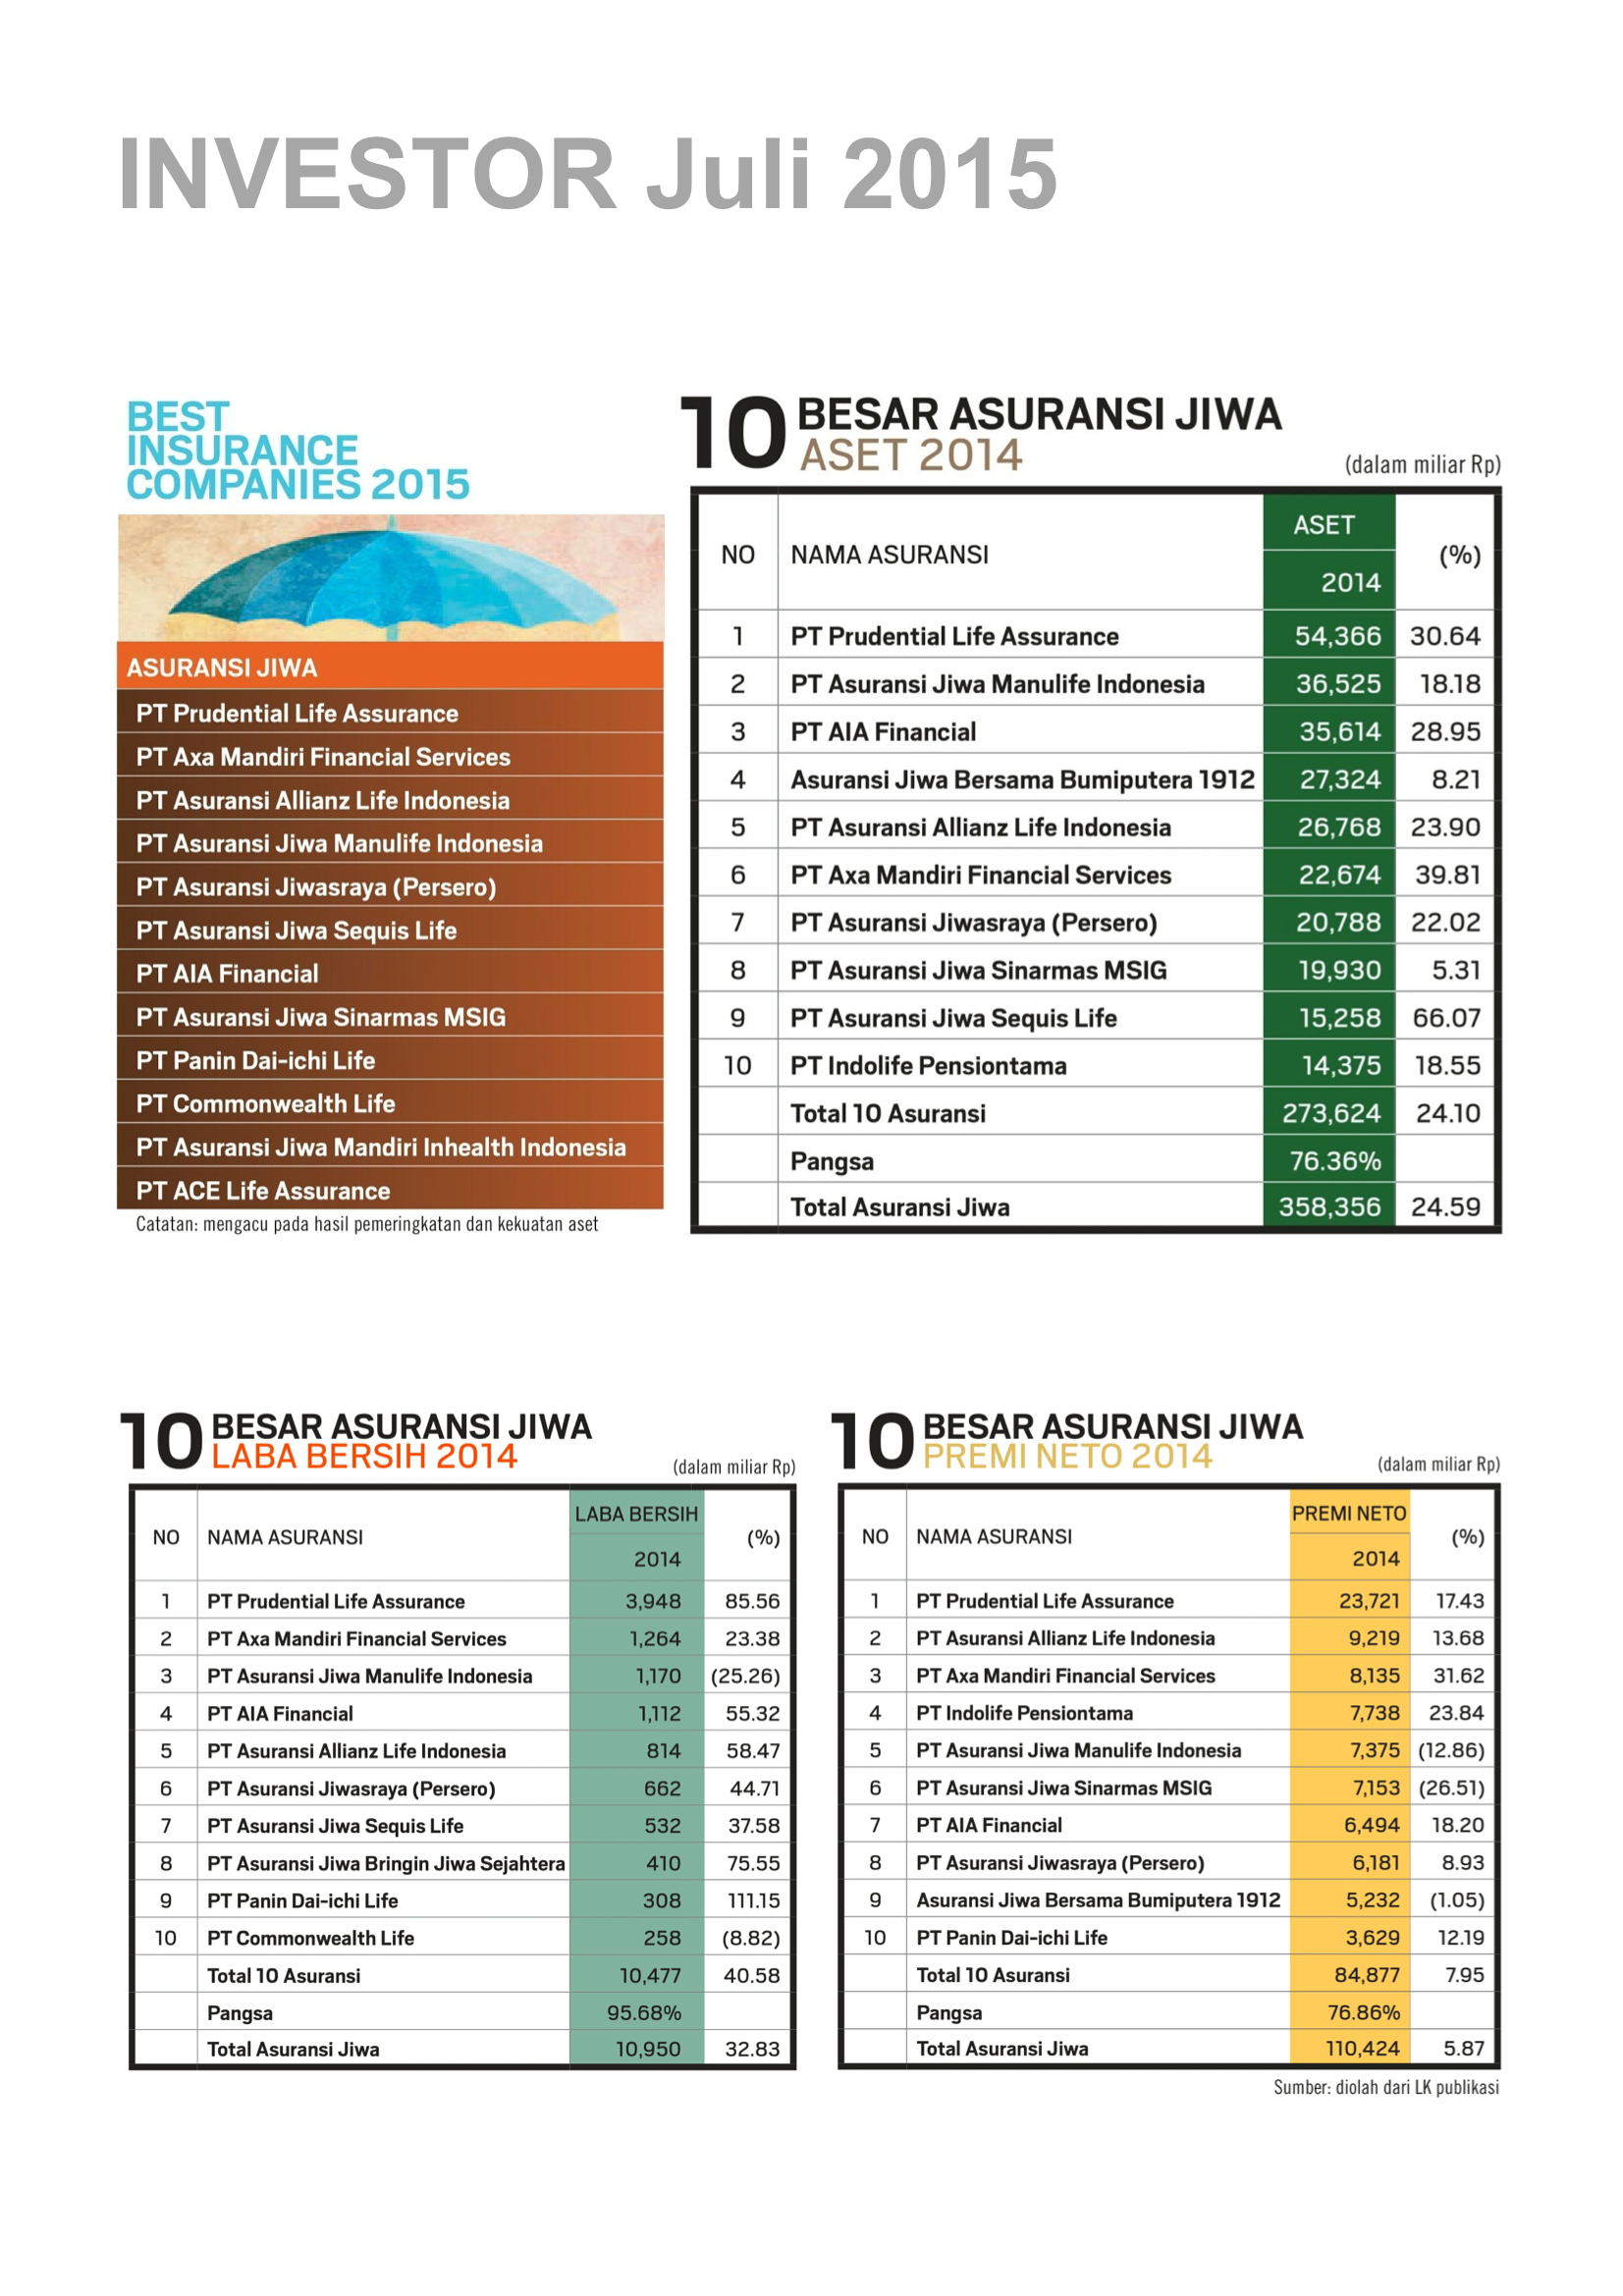 Best Insurances Companies 2015